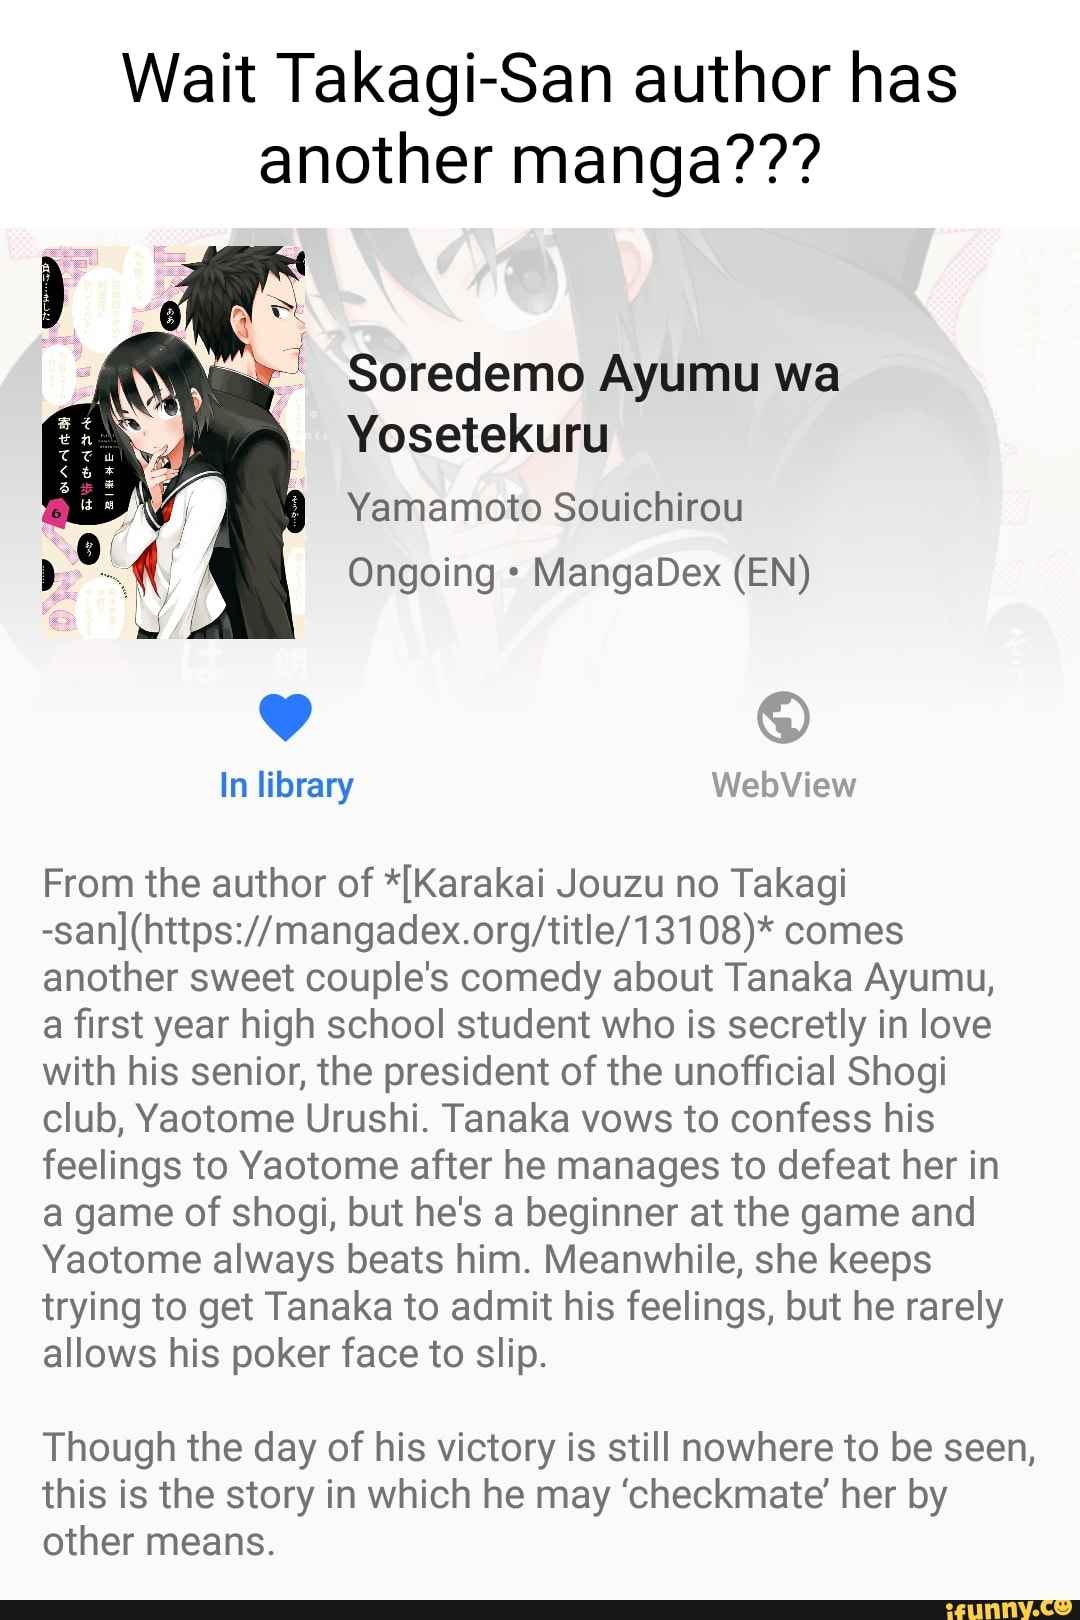 Soredemo Ayumu wa Yosetekuru - MangaDex